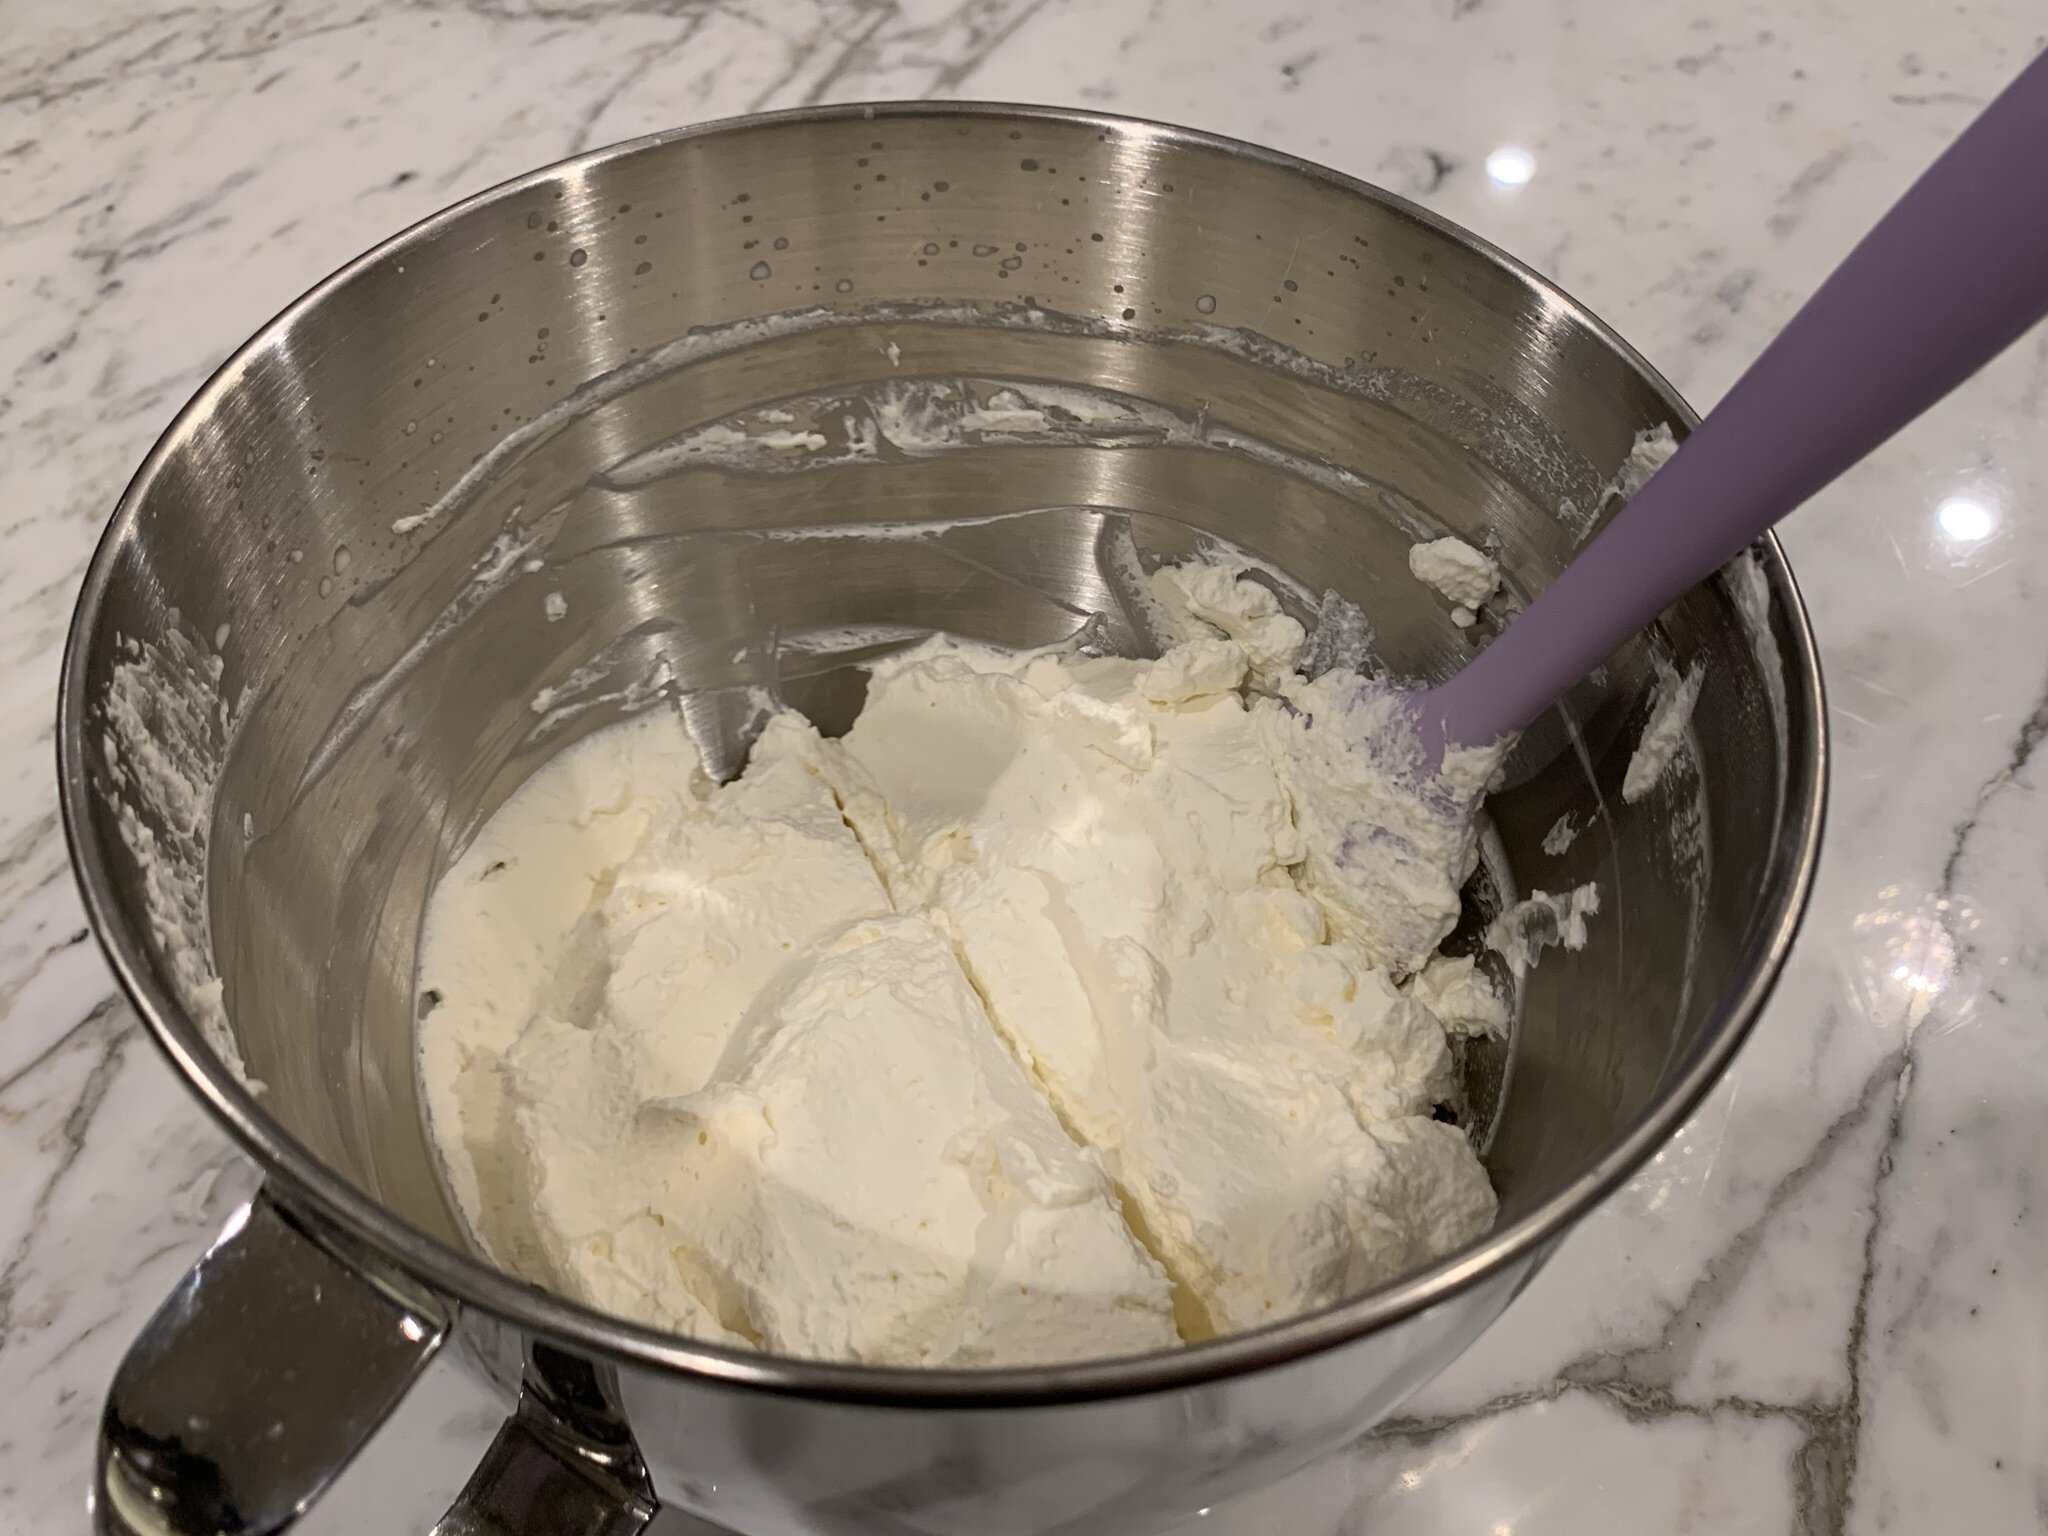 5a) Cut whipped cream in half.